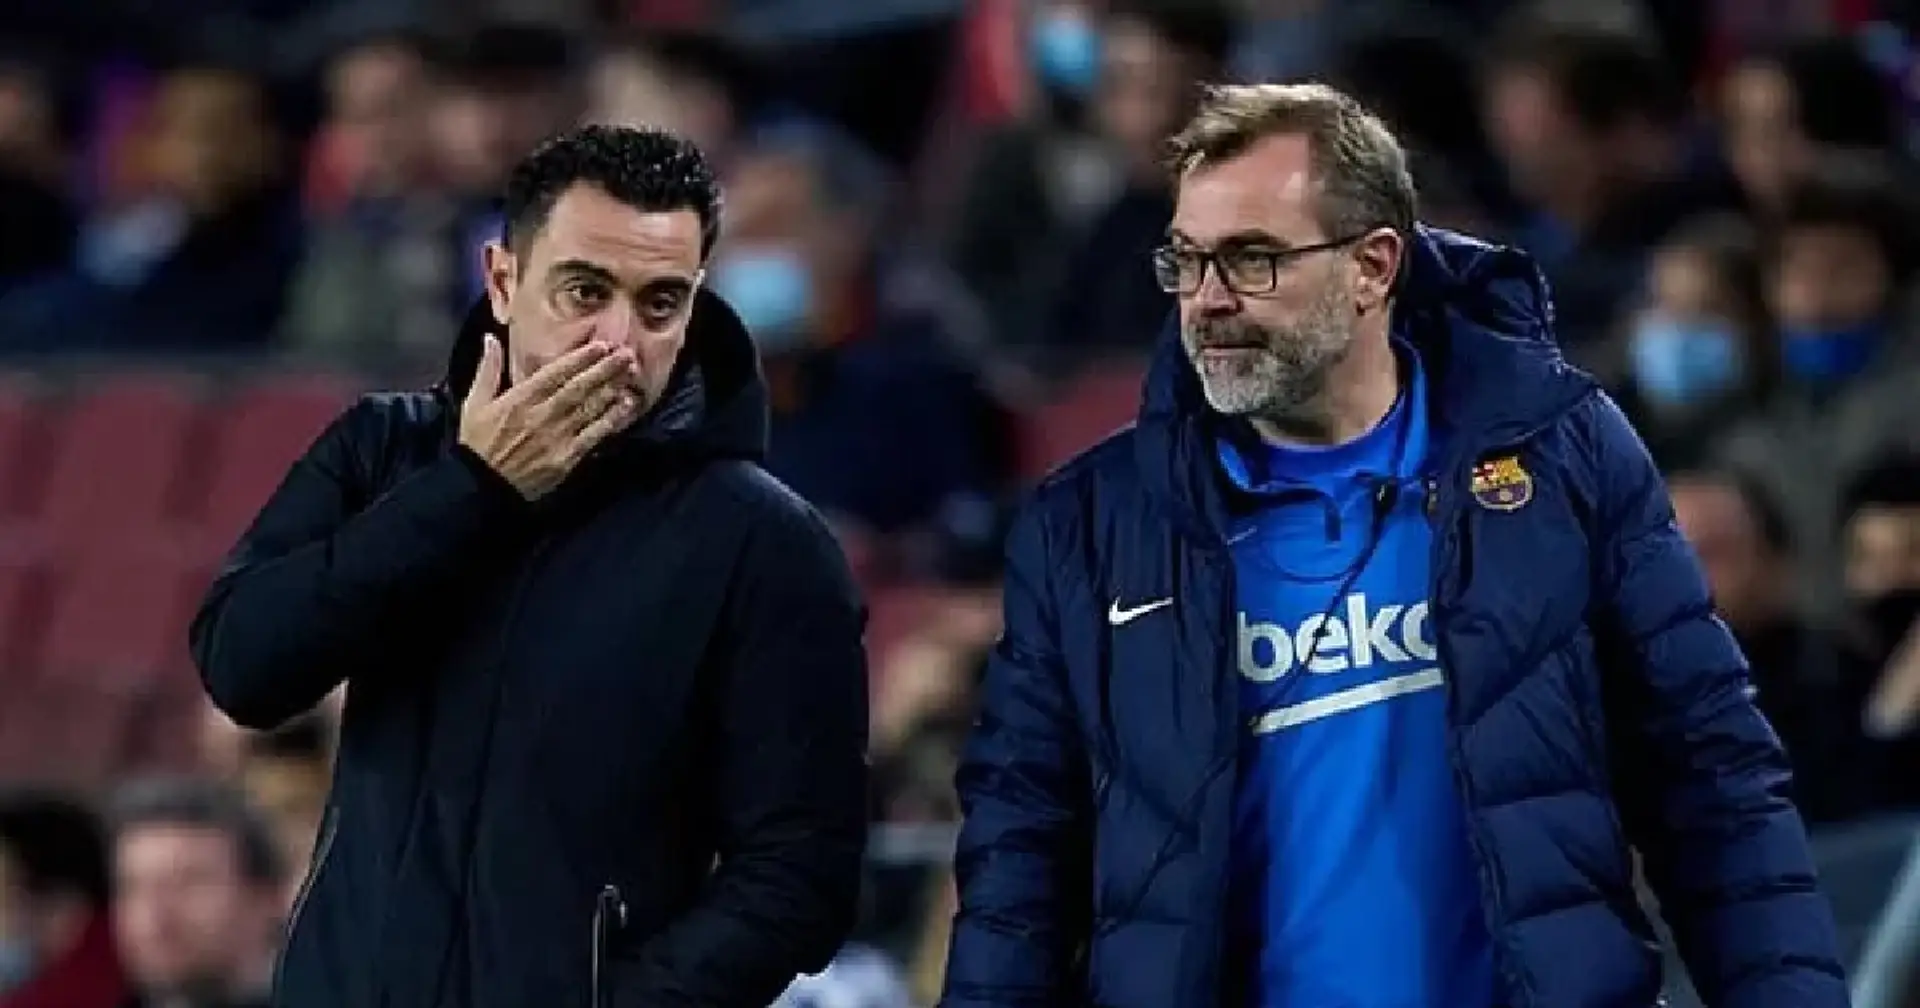 Le onze de départ du Barça pour le choc contre Las Palmas révélé